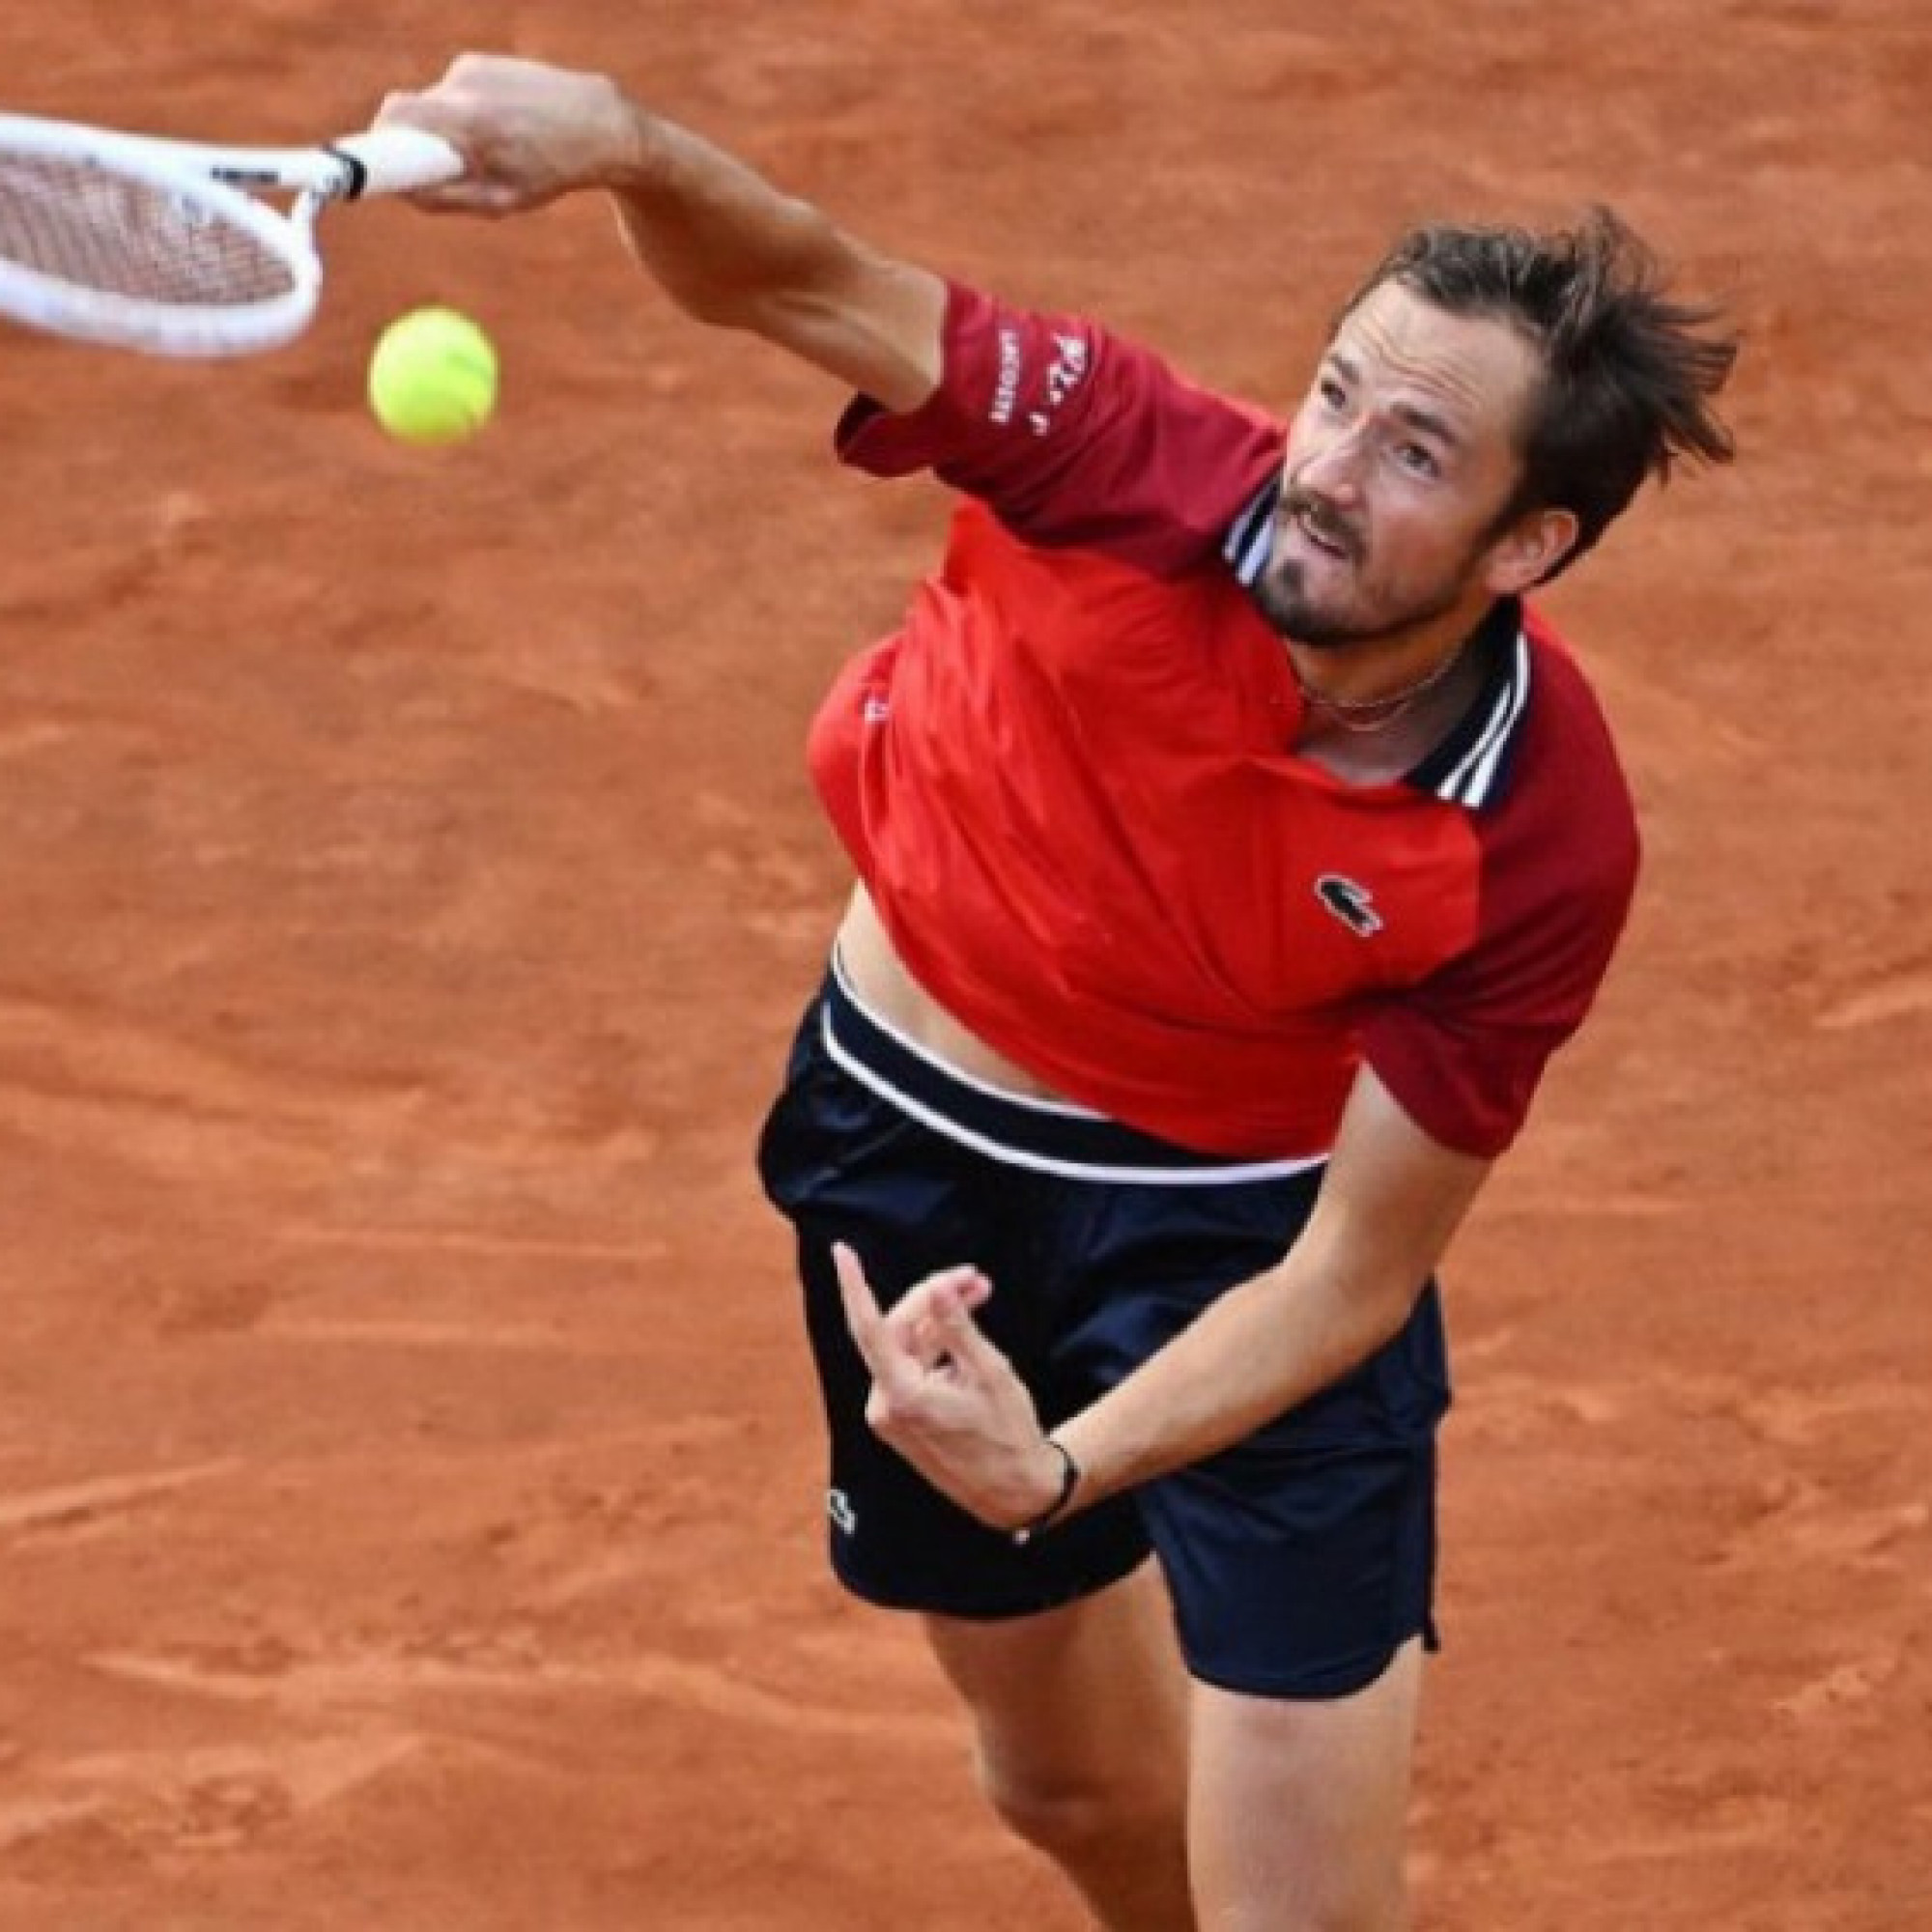  - Video tennis Medjedovic - Medvedev: Thảm bại set 2, bừng tỉnh đúng lúc (Rome Open)